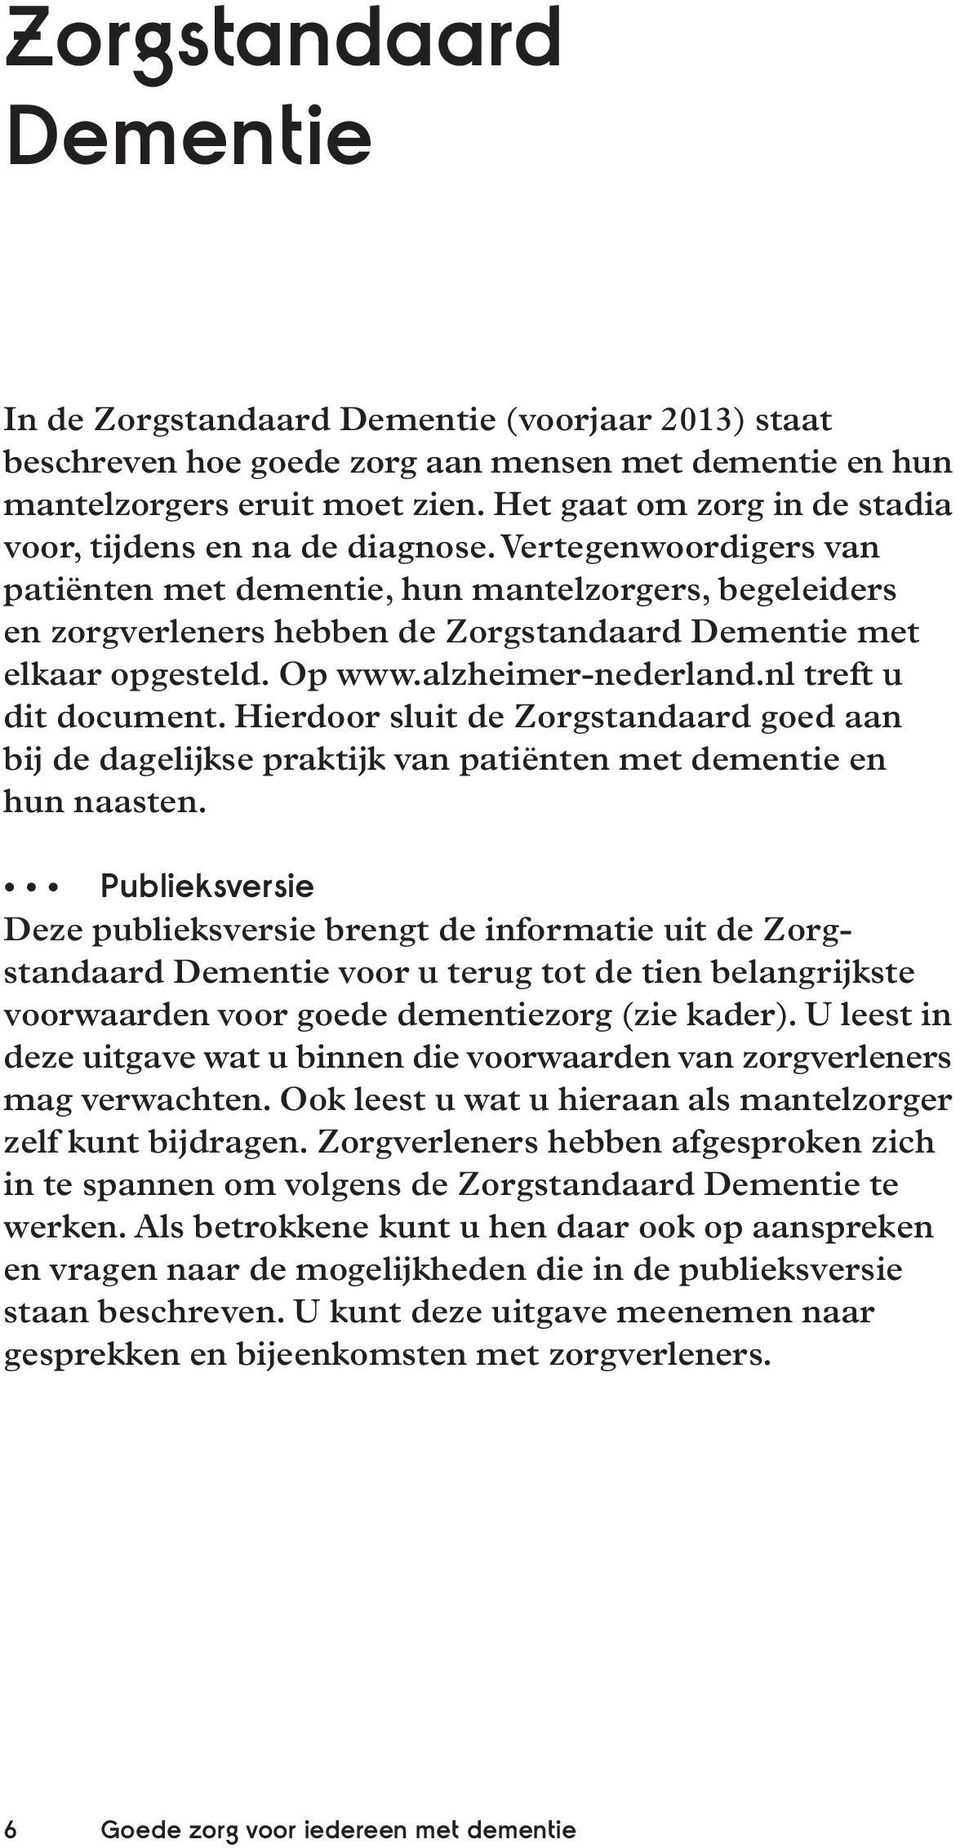 Vertegenwoordigers van patiënten met dementie, hun mantelzorgers, begeleiders en zorgverleners hebben de Zorgstandaard Dementie met elkaar opgesteld. Op www.alzheimer-nederland.